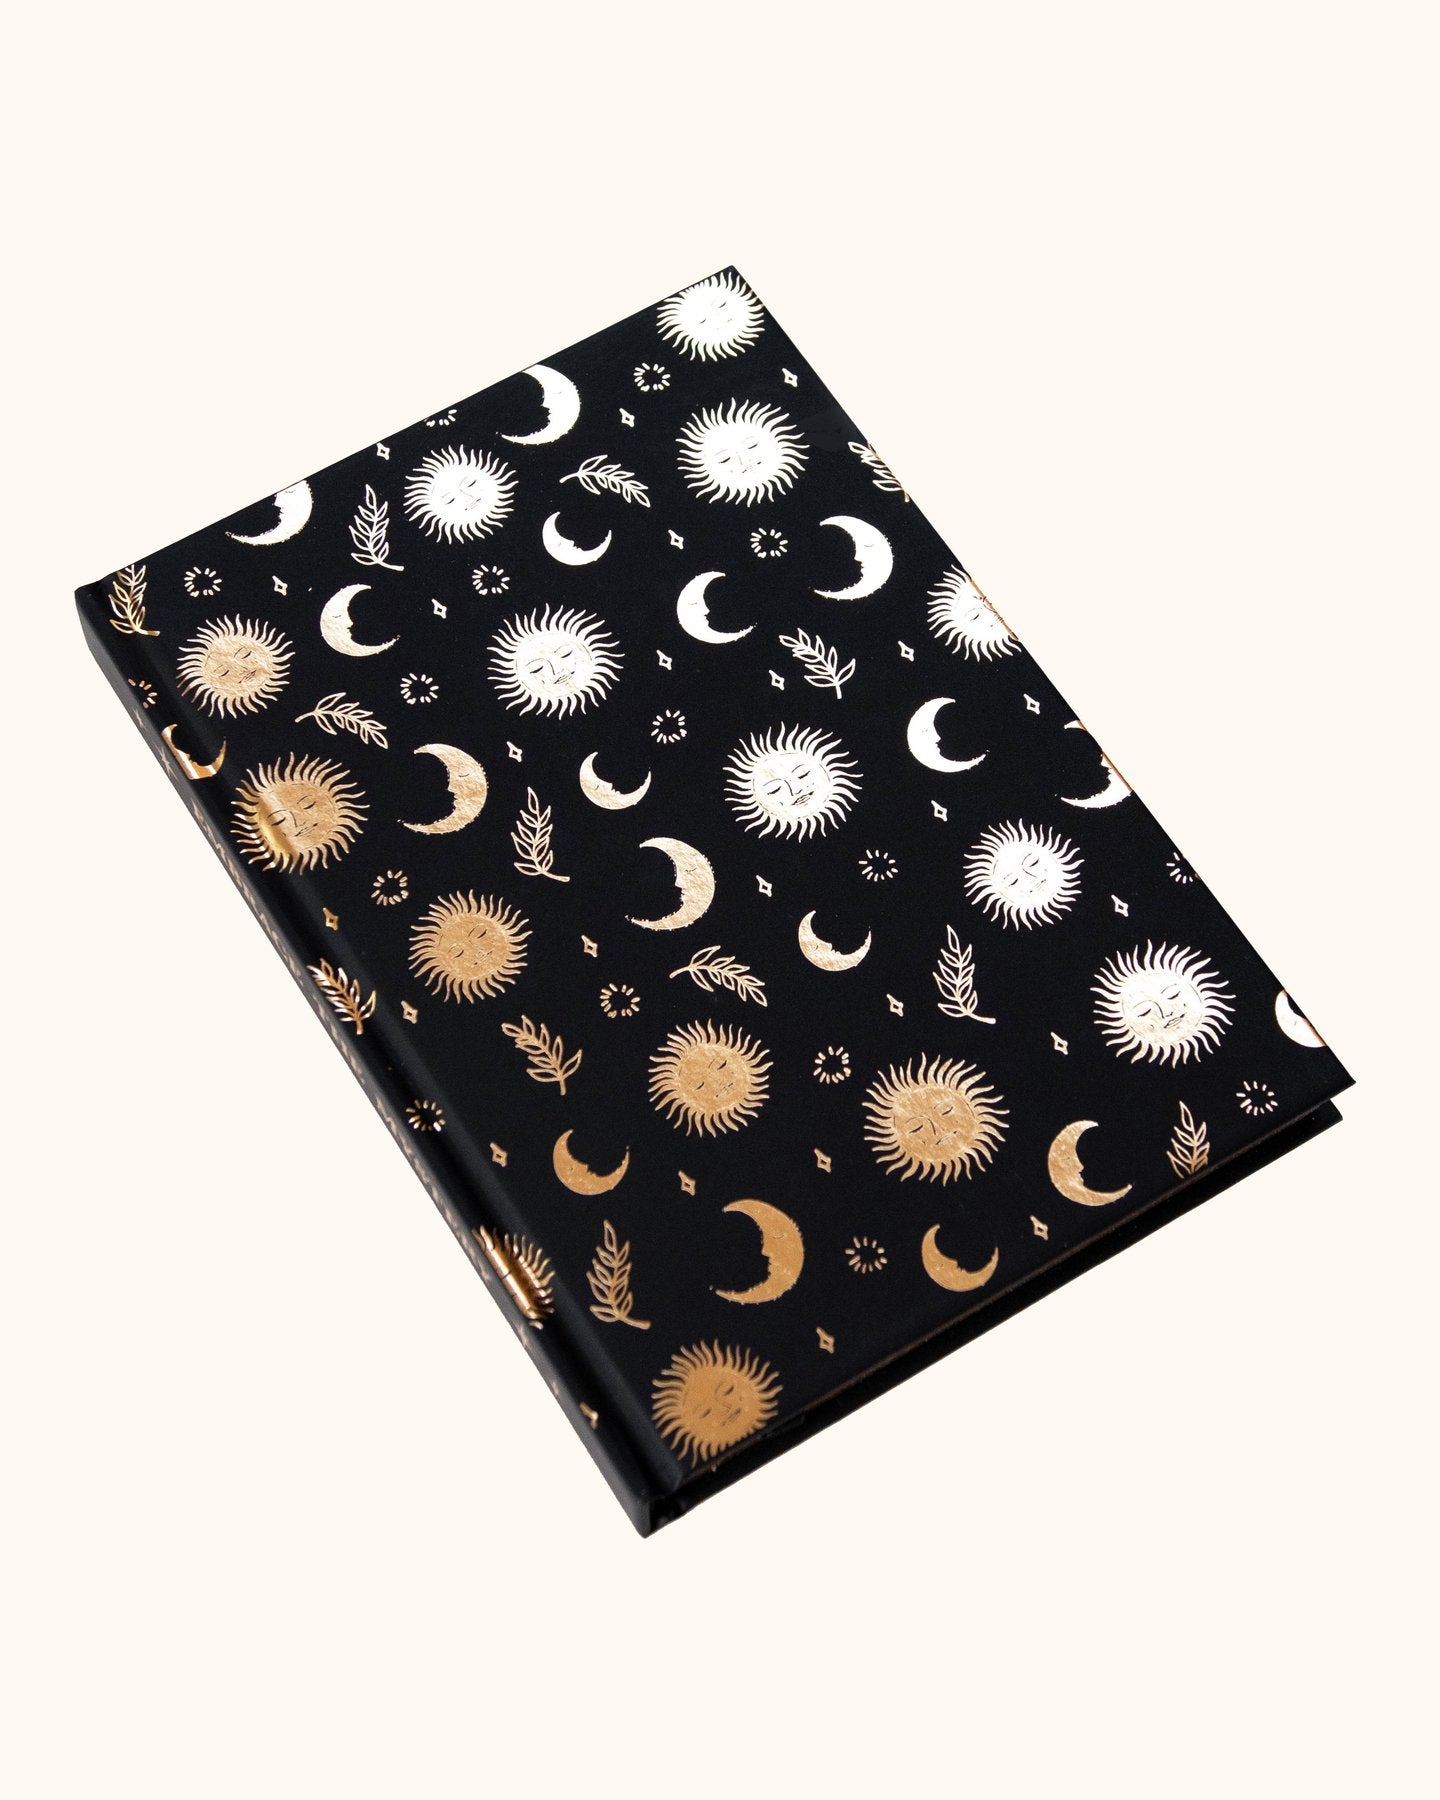 Celestial Hardcover Journal